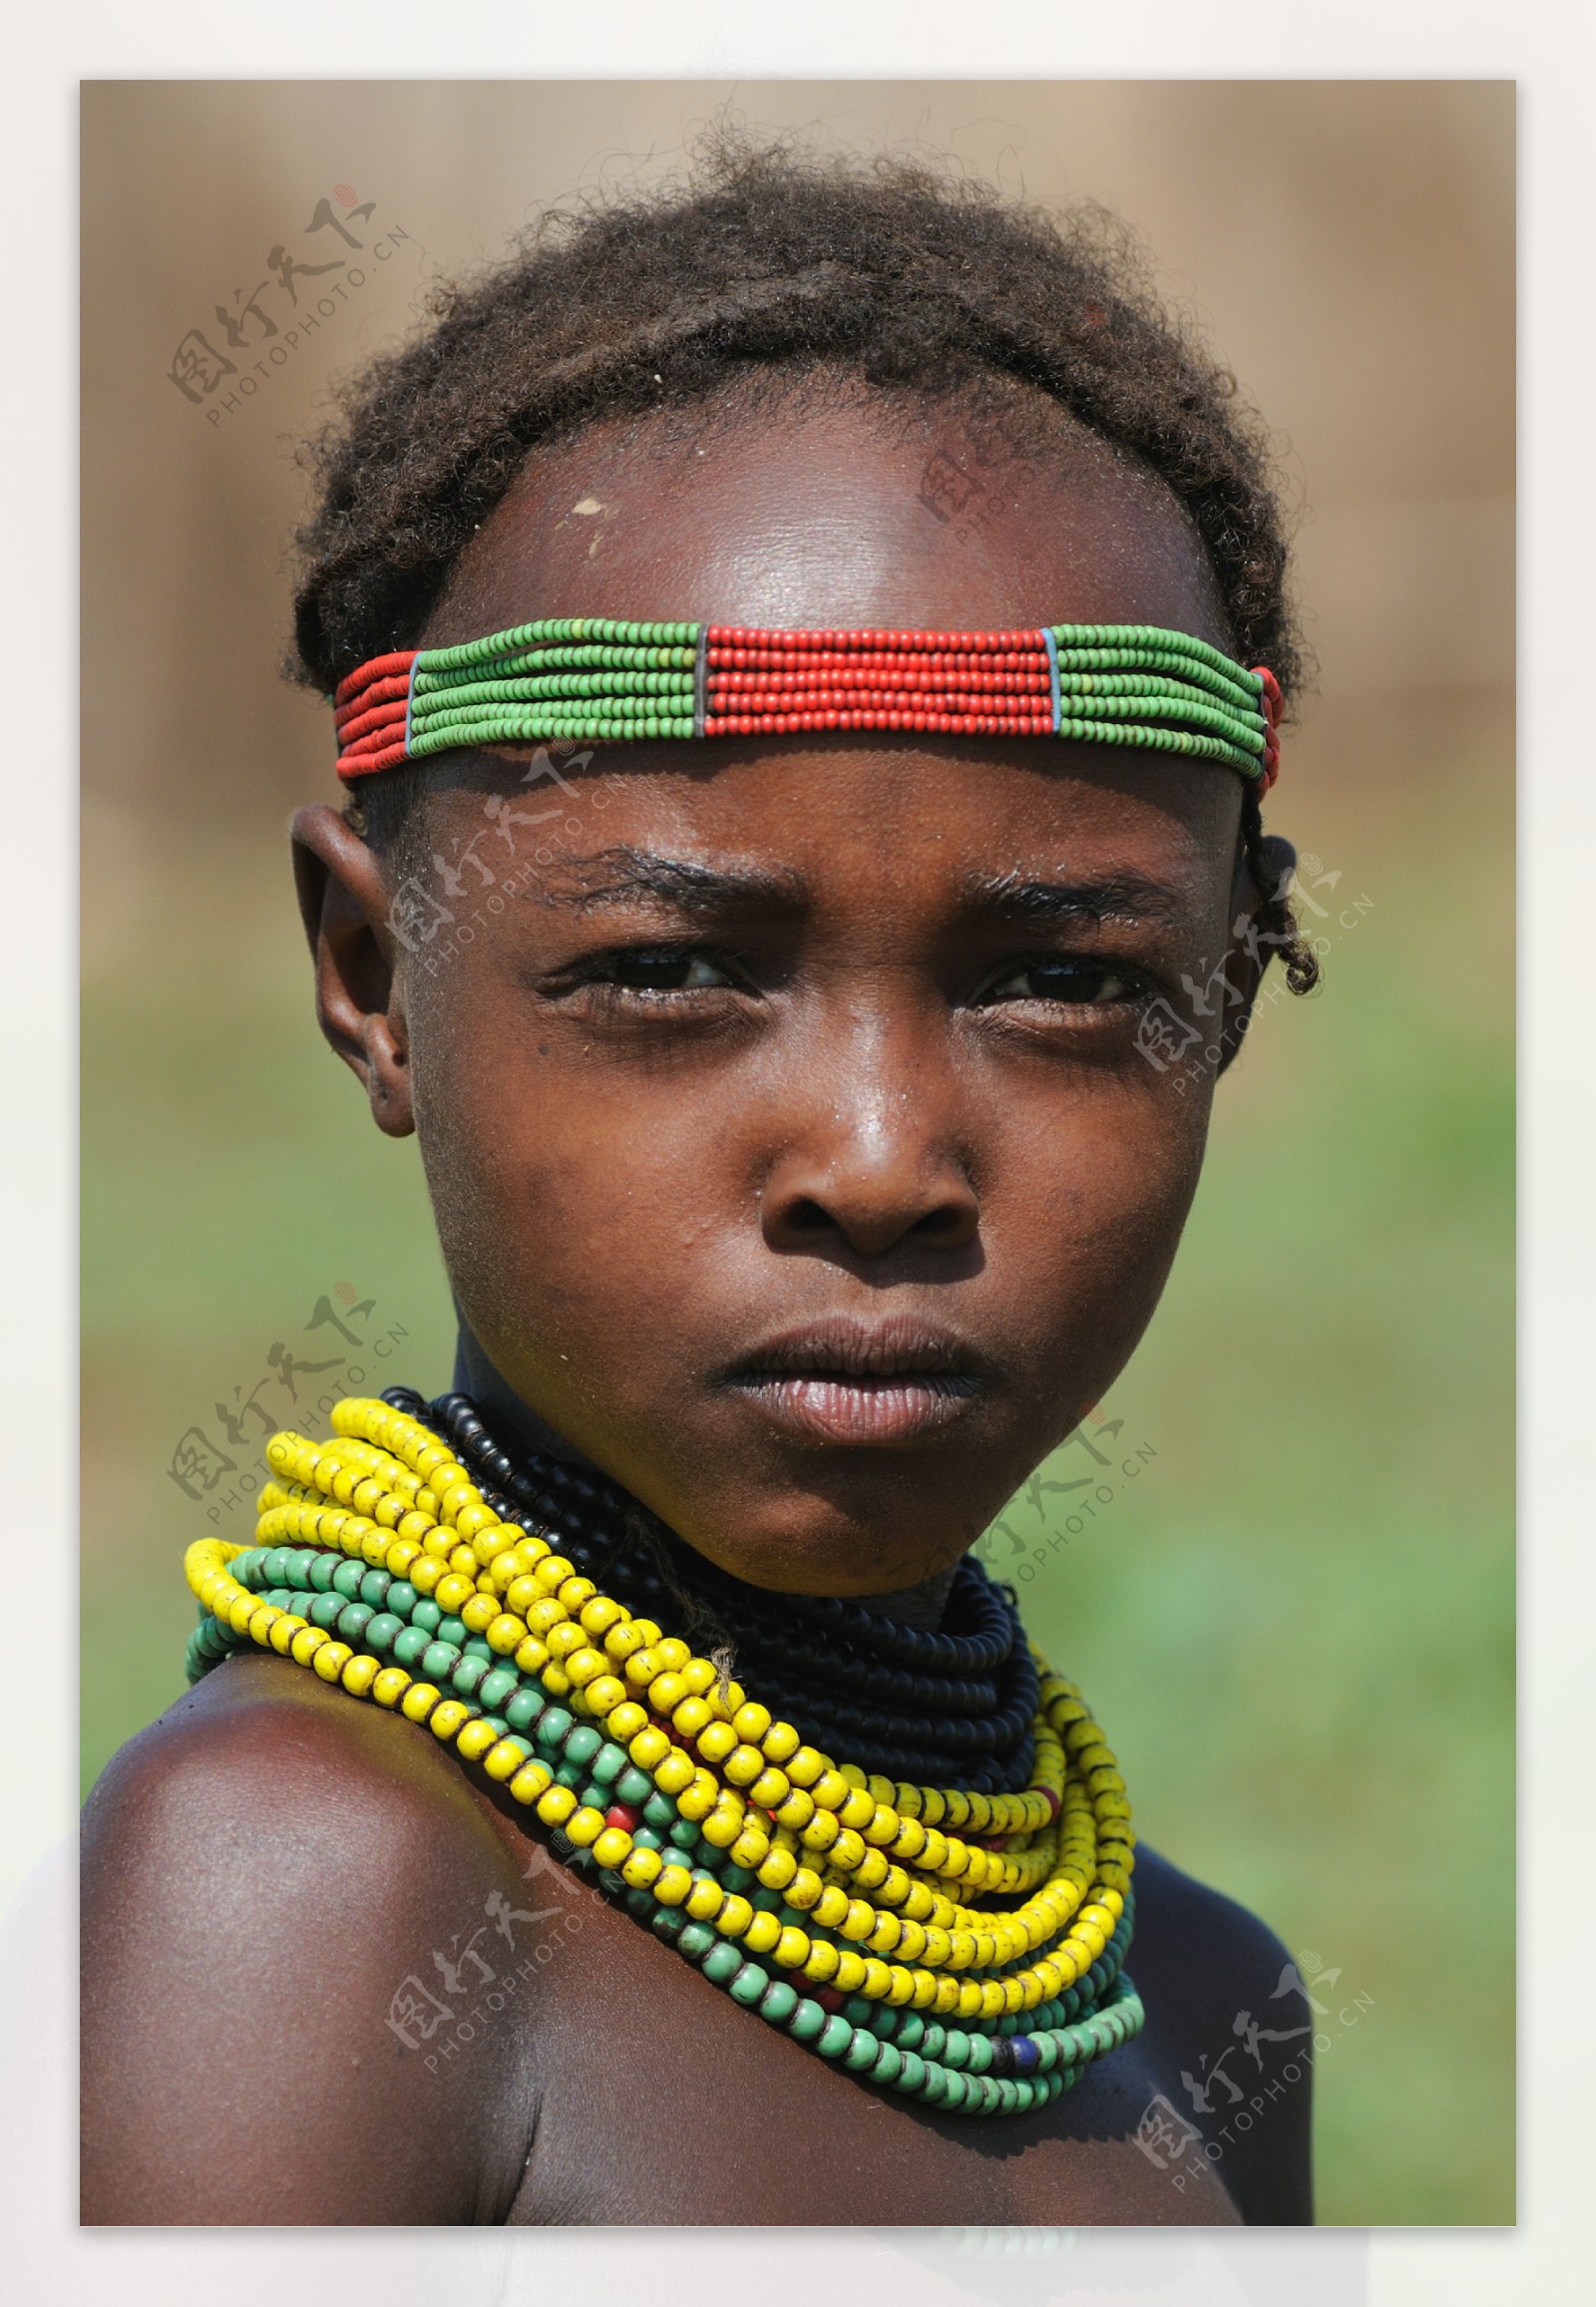 非洲土著人图片